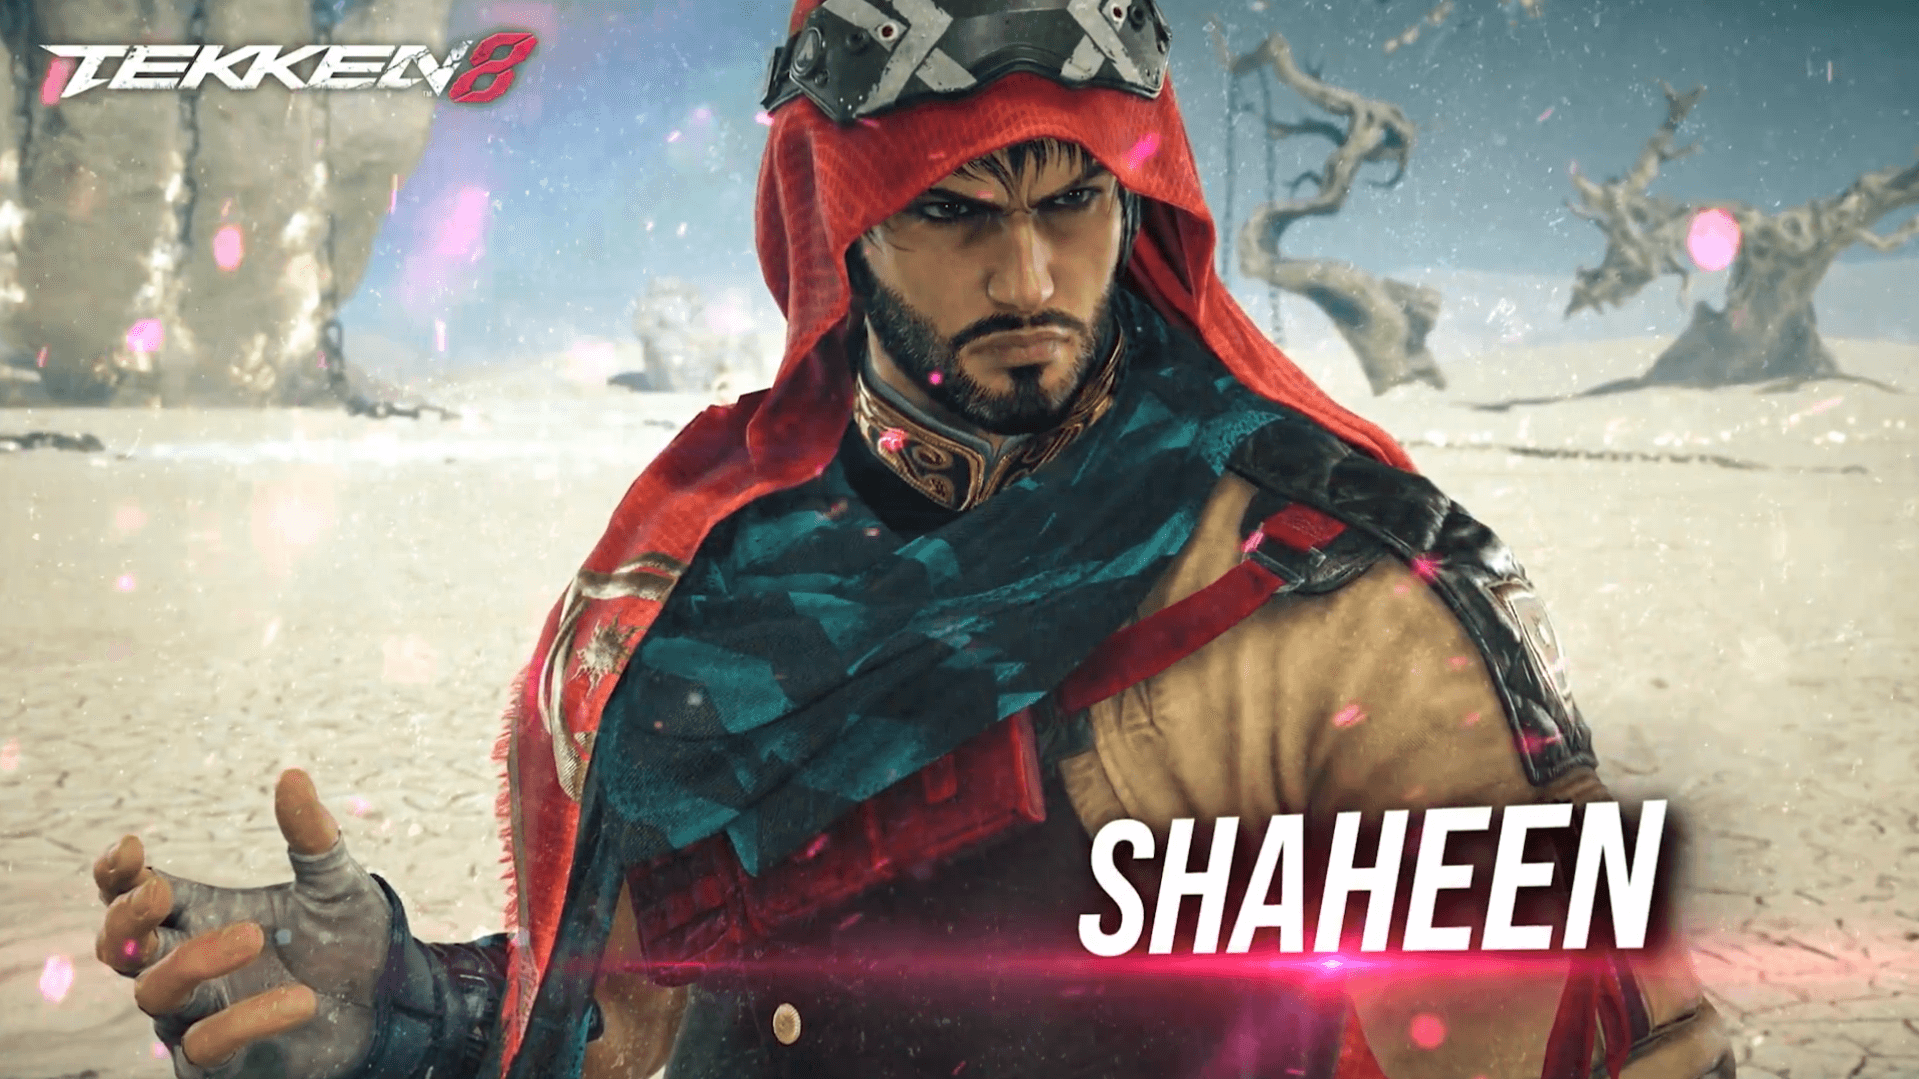 TEKKEN 8 Shaheen Gameplay Trailer